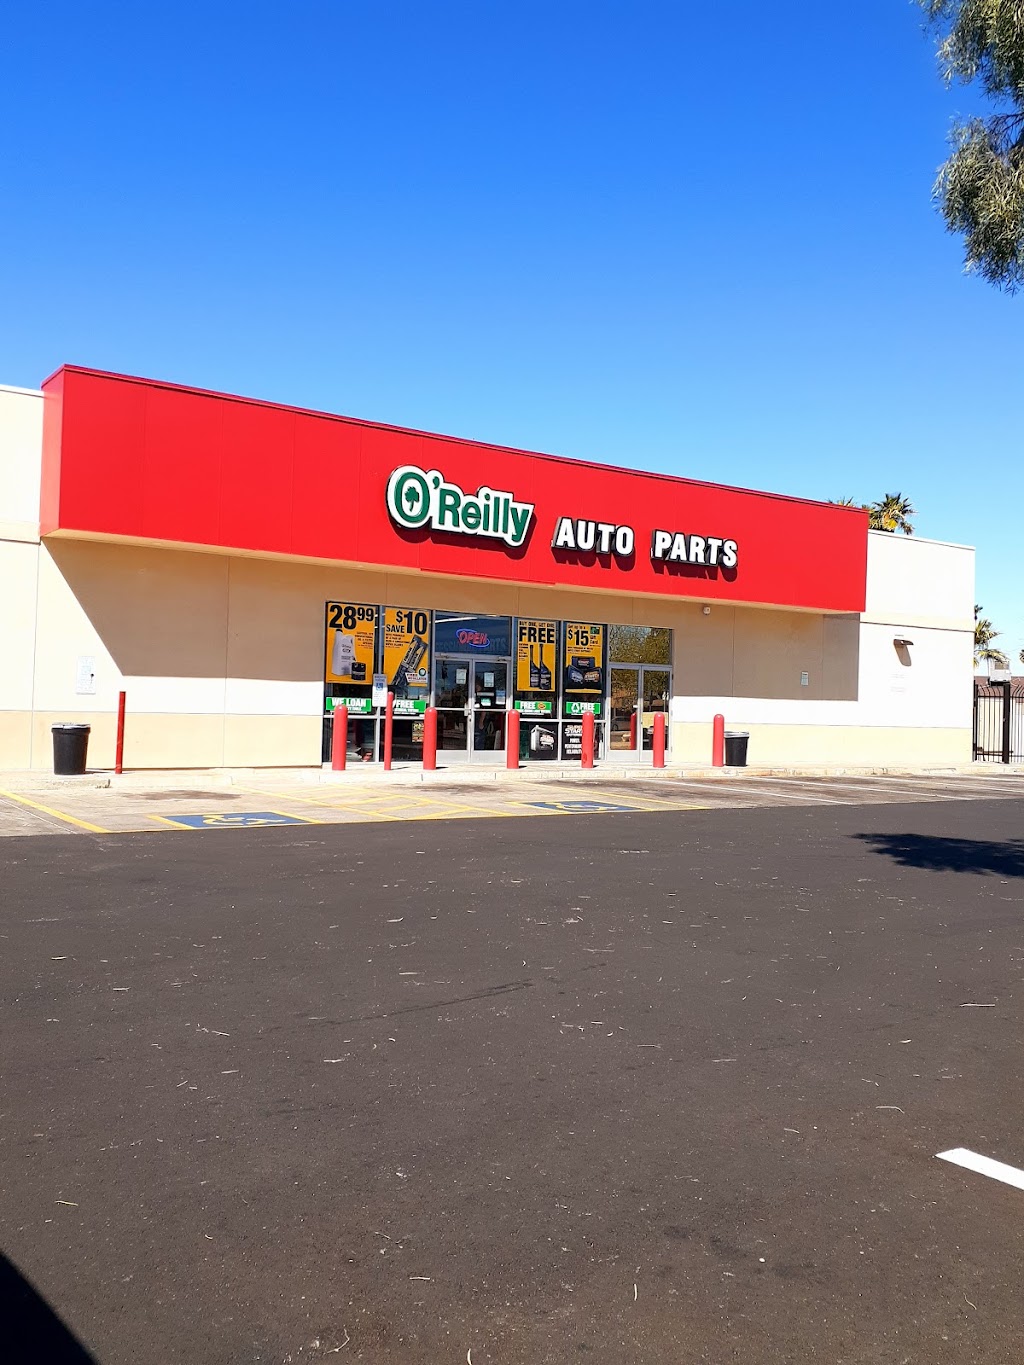 OReilly Auto Parts | 13840 N 35th Ave, Phoenix, AZ 85053 | Phone: (602) 375-0368